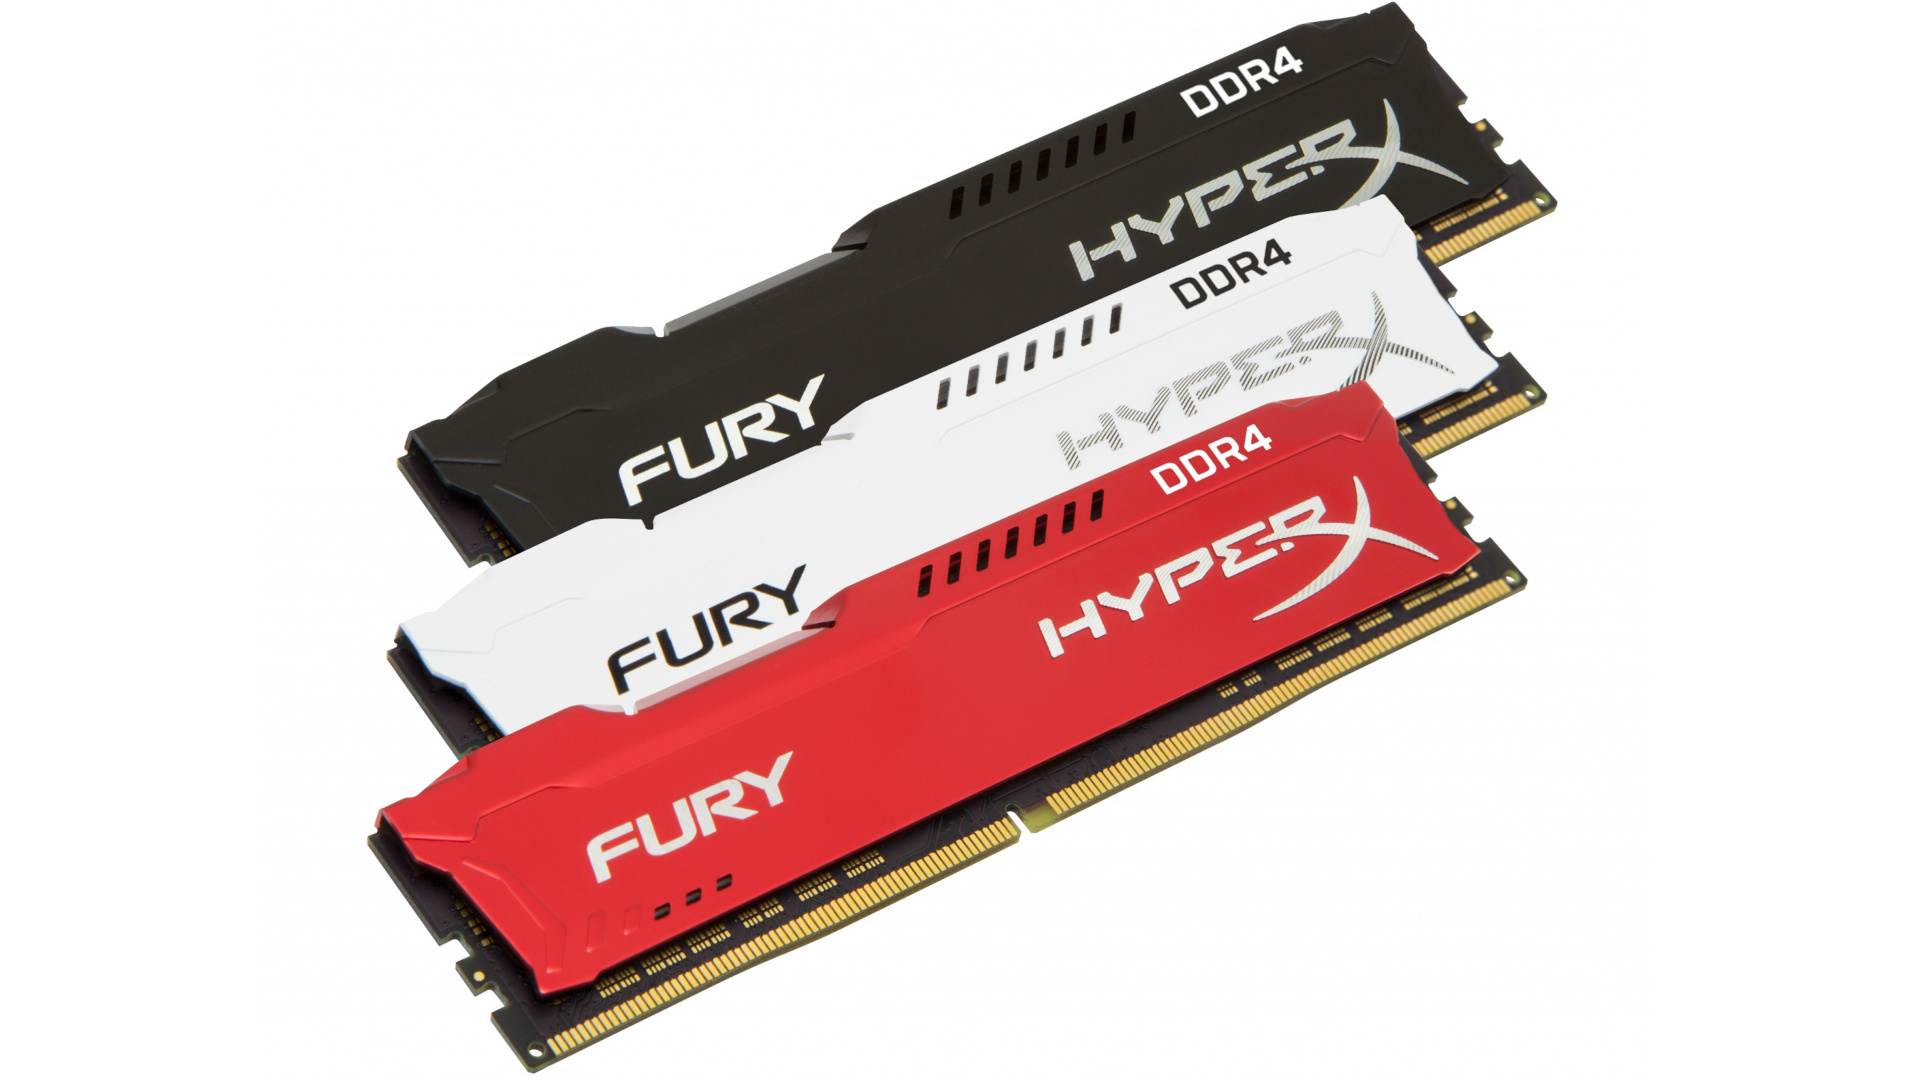 HyperX Fury DDR4 2133 C14 2x8GB 2